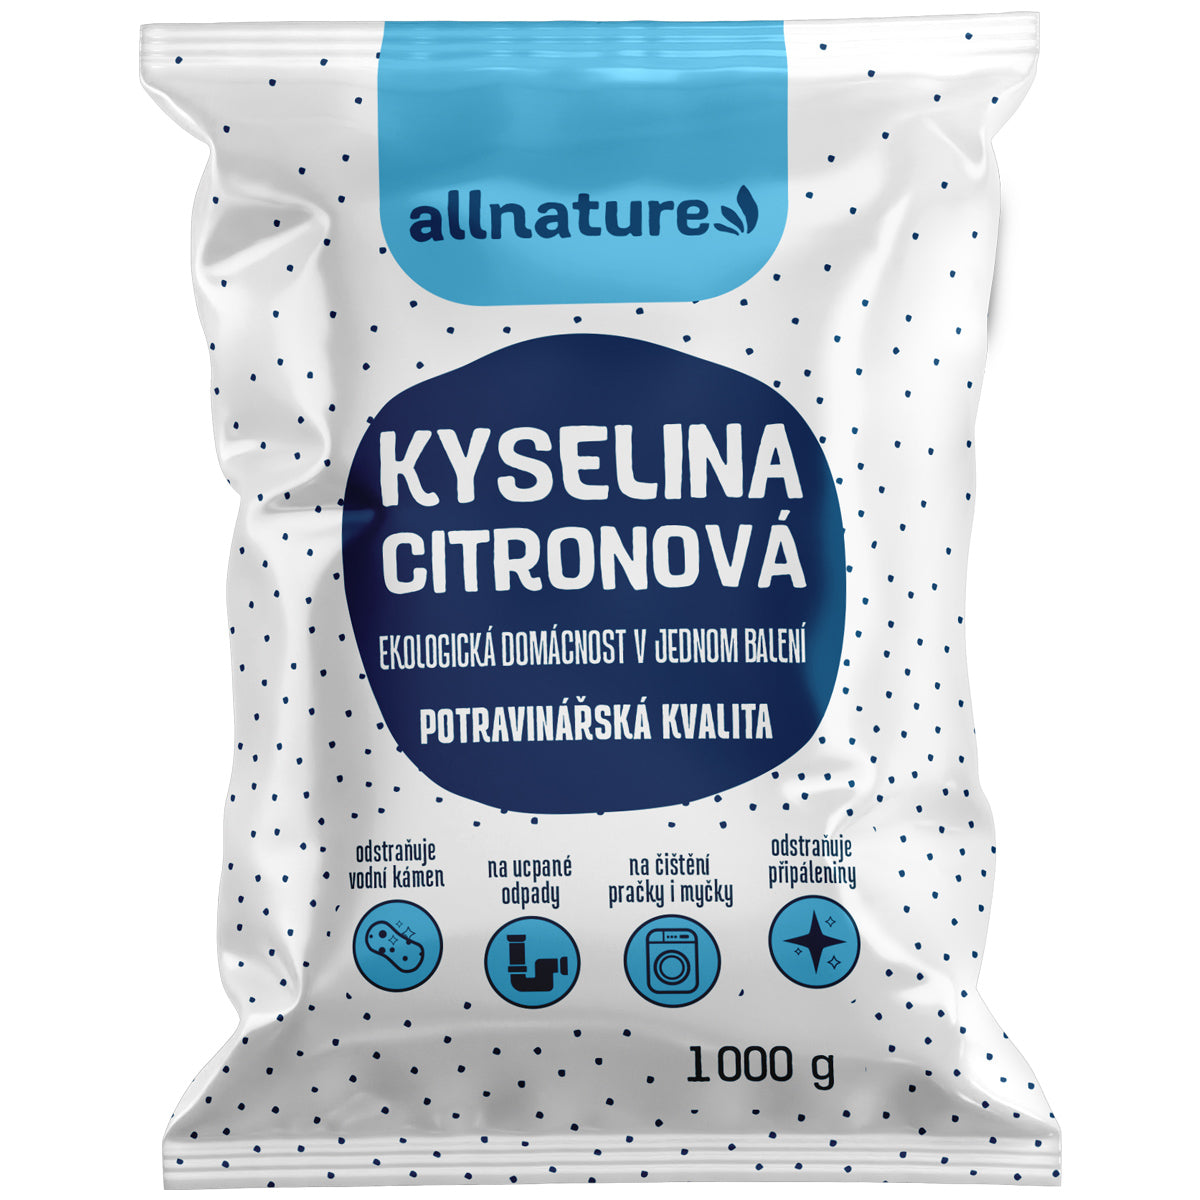 Allnature Kyselina citronová - 1 kg - potravinářská kvalita